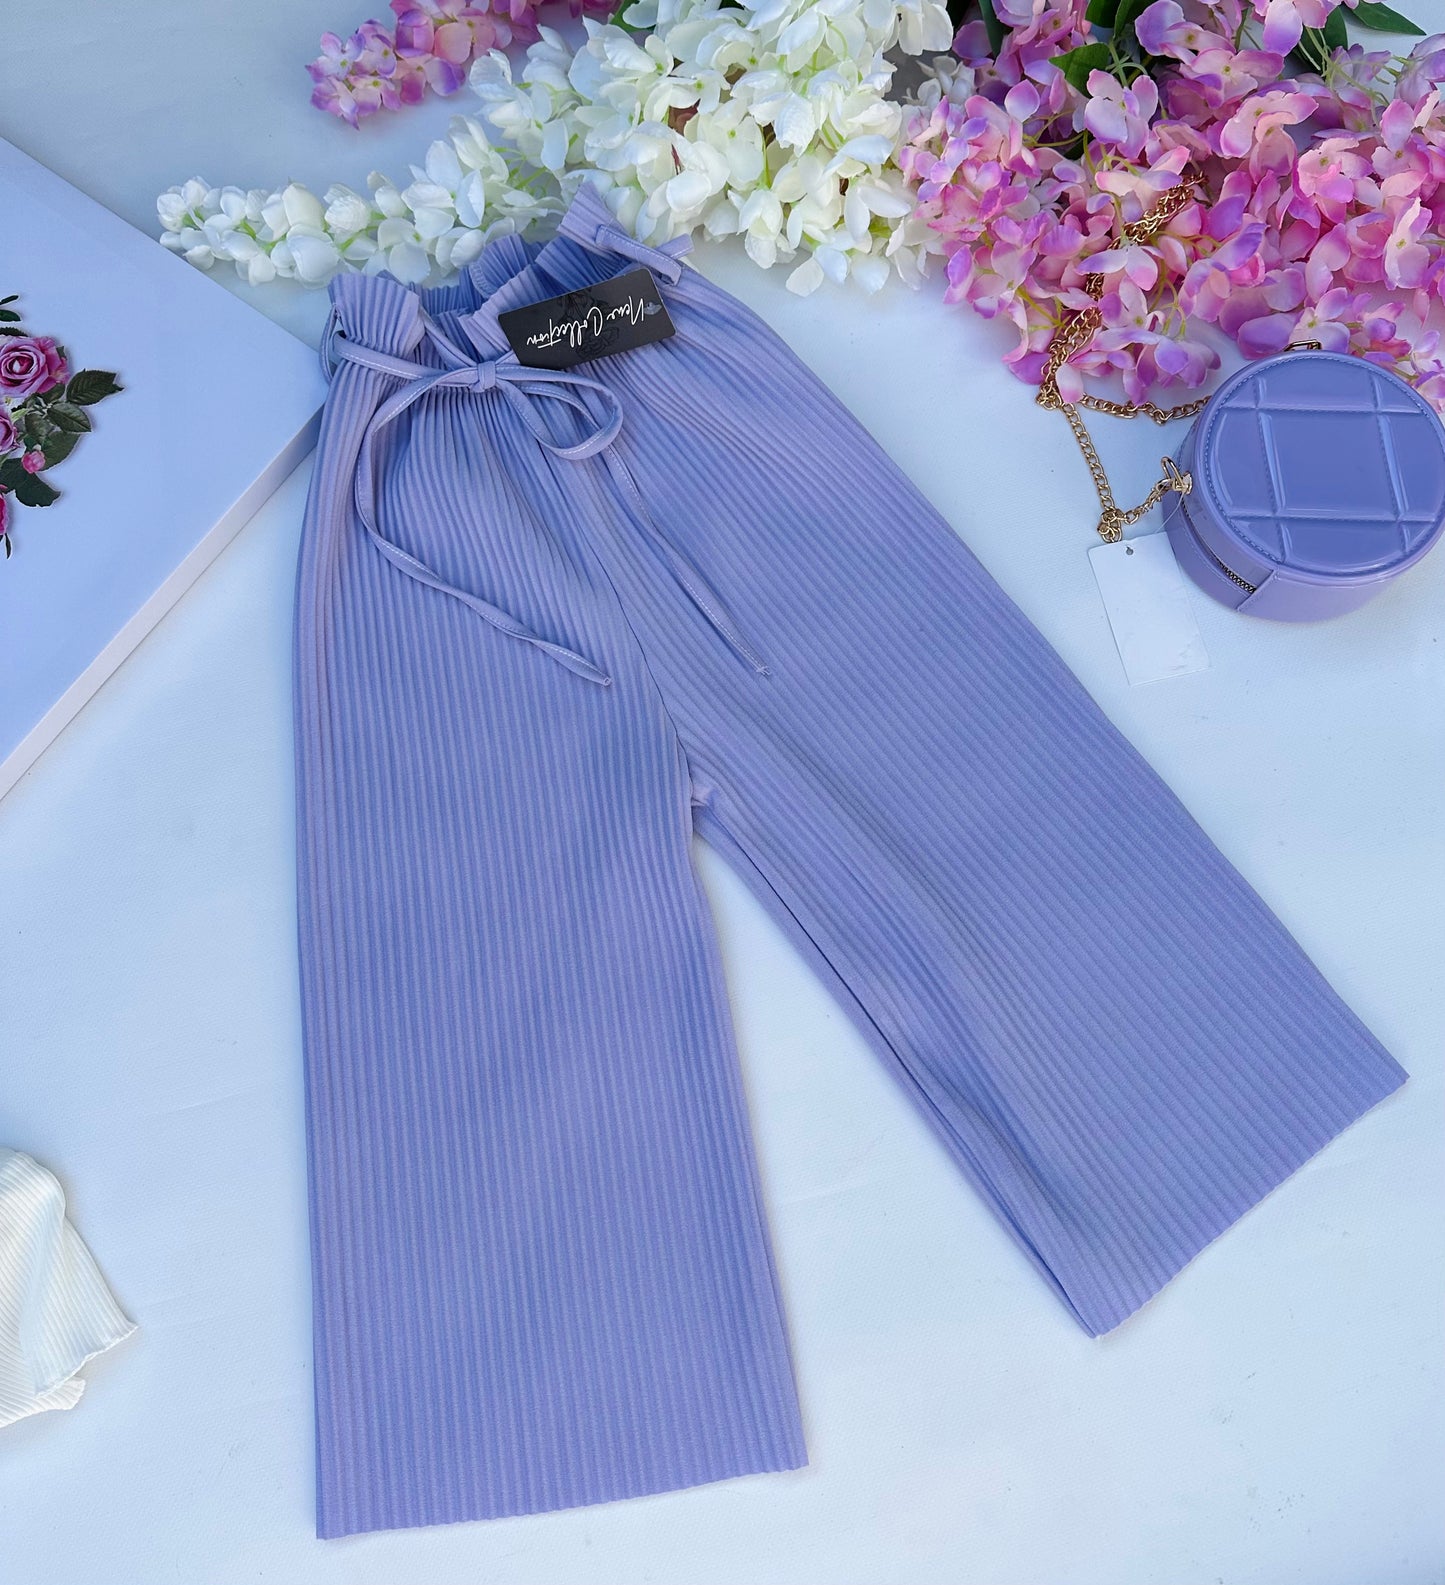 Lilac culottes pants